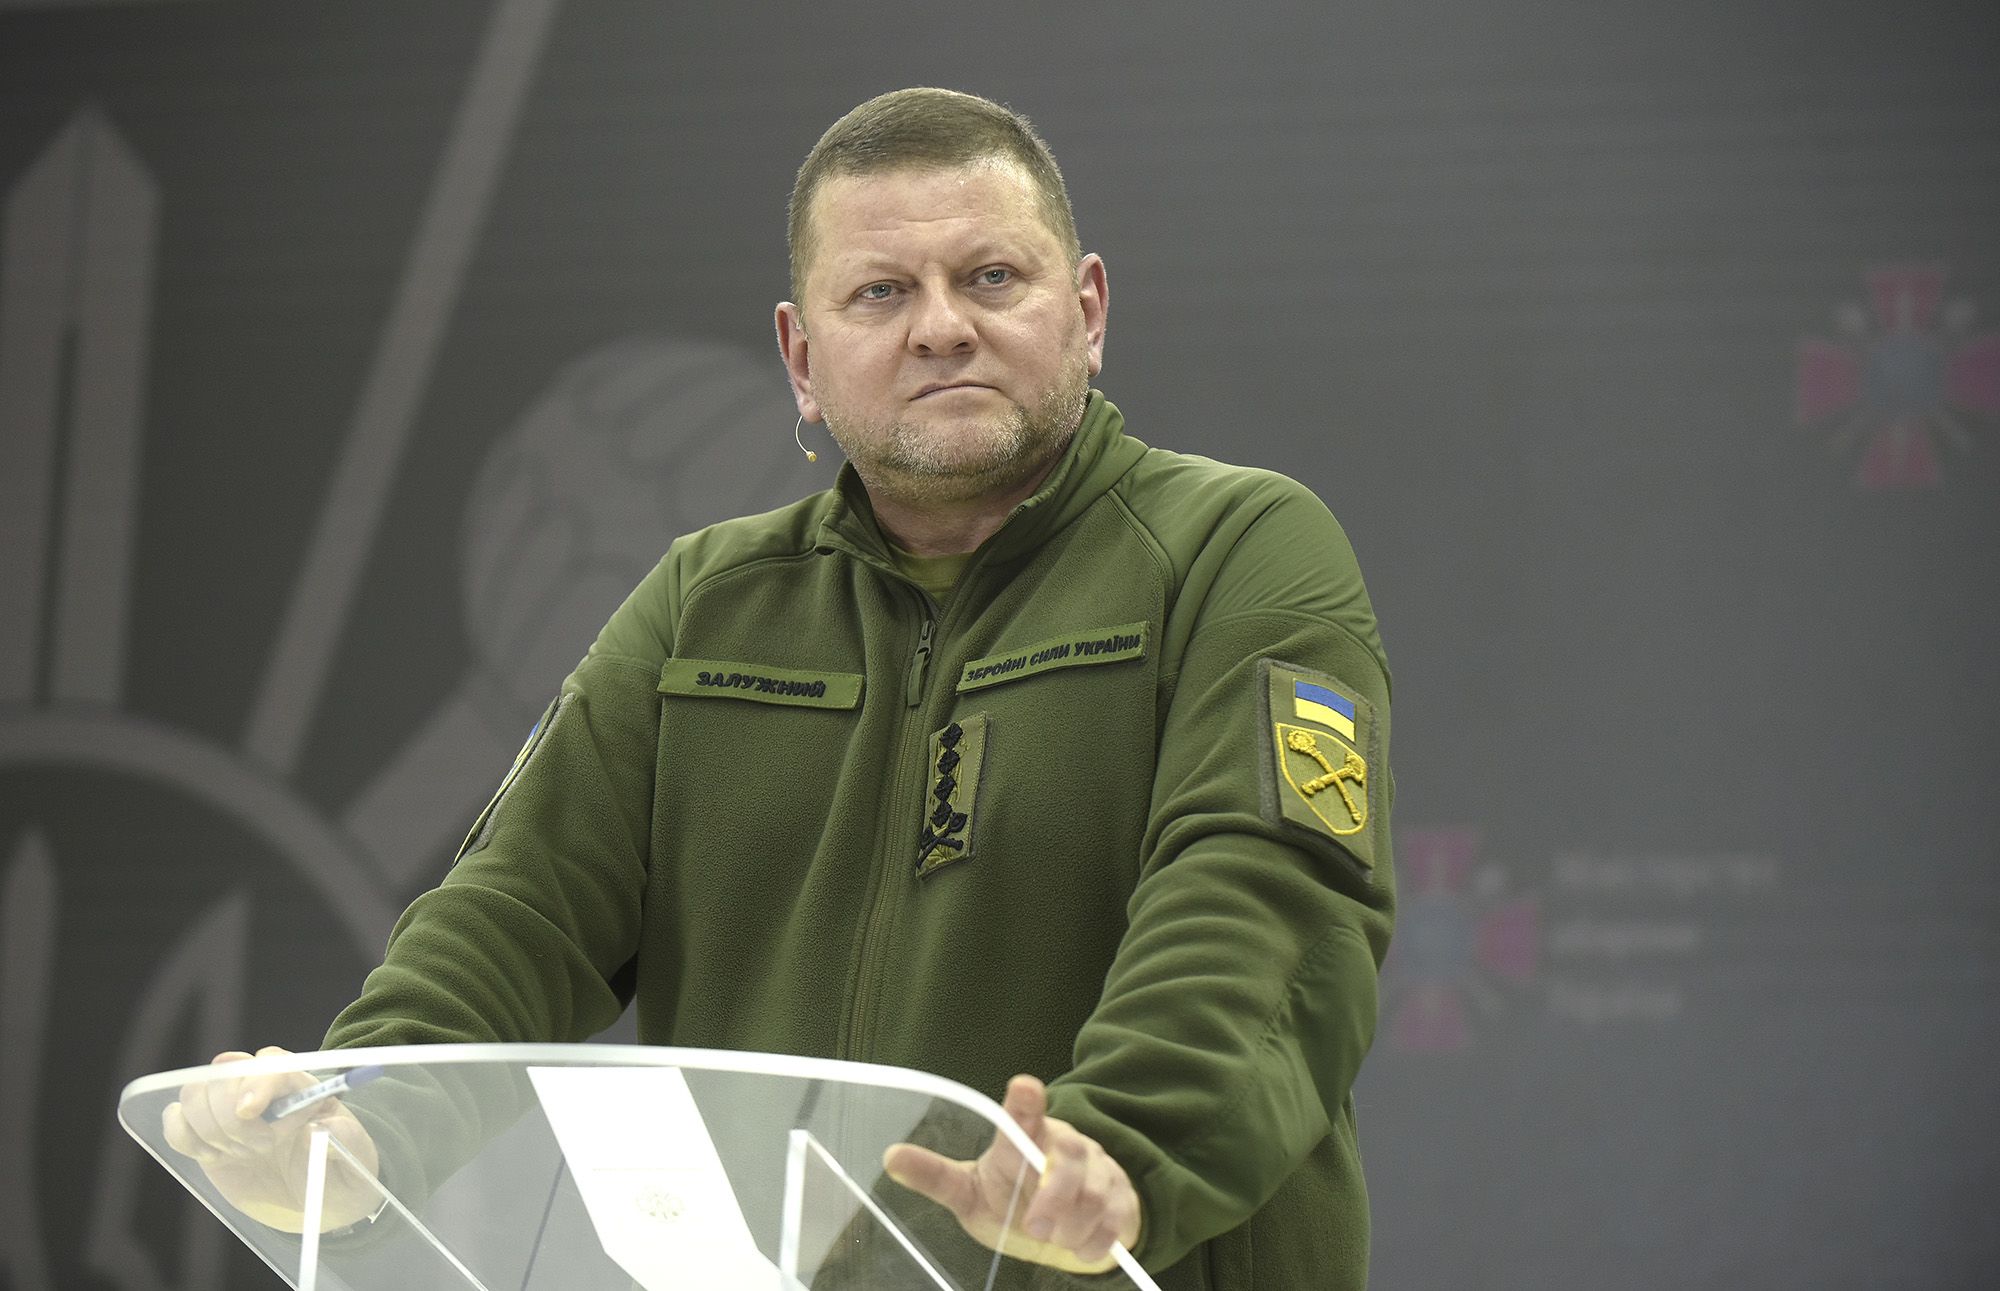 Ο Ουκρανός στρατηγός Valerii Zaluzhnyi πραγματοποιεί συνέντευξη Τύπου ** ΔΙΑΘΕΣΙΜΗ ΙΣΤΟΡΙΑ, ΕΠΙΚΟΙΝΩΝΗΣΤΕ ΜΕ ΤΟΝ ΠΡΟΜΗΘΕΥΤΗ** Με τους: Ανώτατος Διοικητής των Ενόπλων Δυνάμεων της Ουκρανίας, Στρατηγός Valerii Zaluzhnyi Πού: Κίεβο, Ουκρανία Πότε: 26 Δεκεμβρίου 2023 Πίστωση: Ukrinform */Εικόνες εξωφύλλου *ΔΙΚΑΙΩΜΑΤΑ ΜΟΝΟ ΗΒ ΚΑΙ Η.Π.Α.** (Εικόνες εξωφύλλου μέσω AP Images)